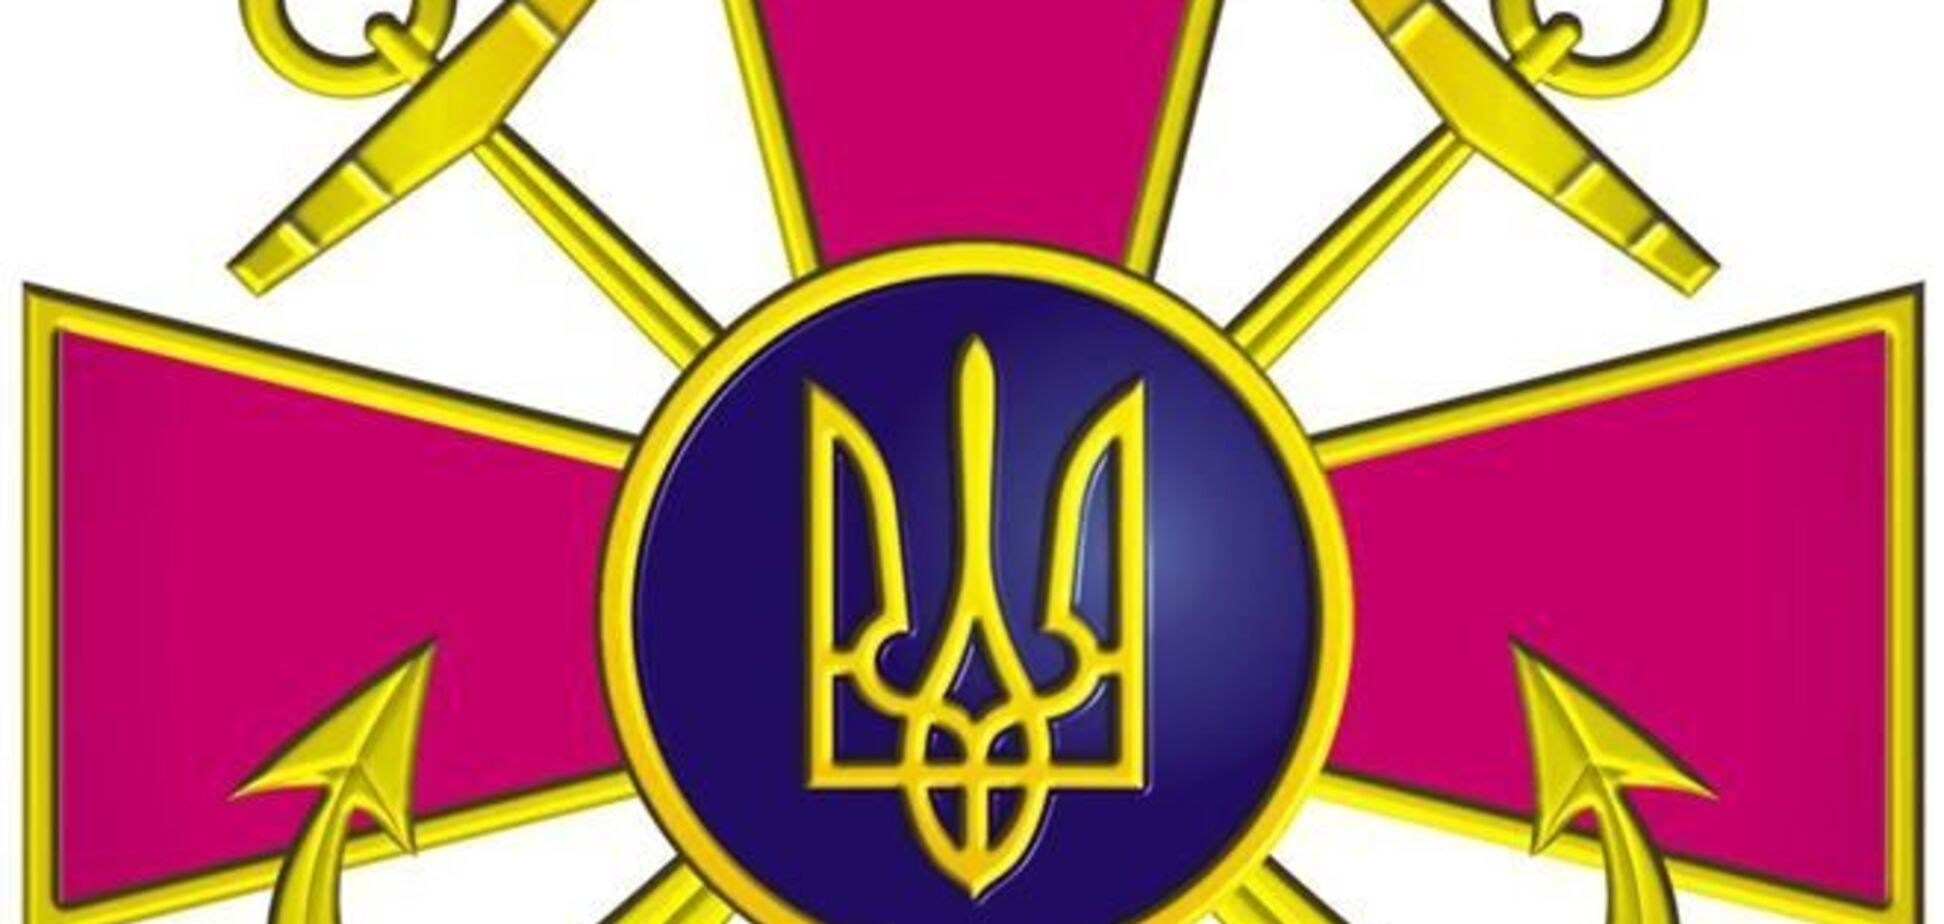 Военный совет ВМС ВС Украины призвал решить ситуацию в Крыму мирным путем